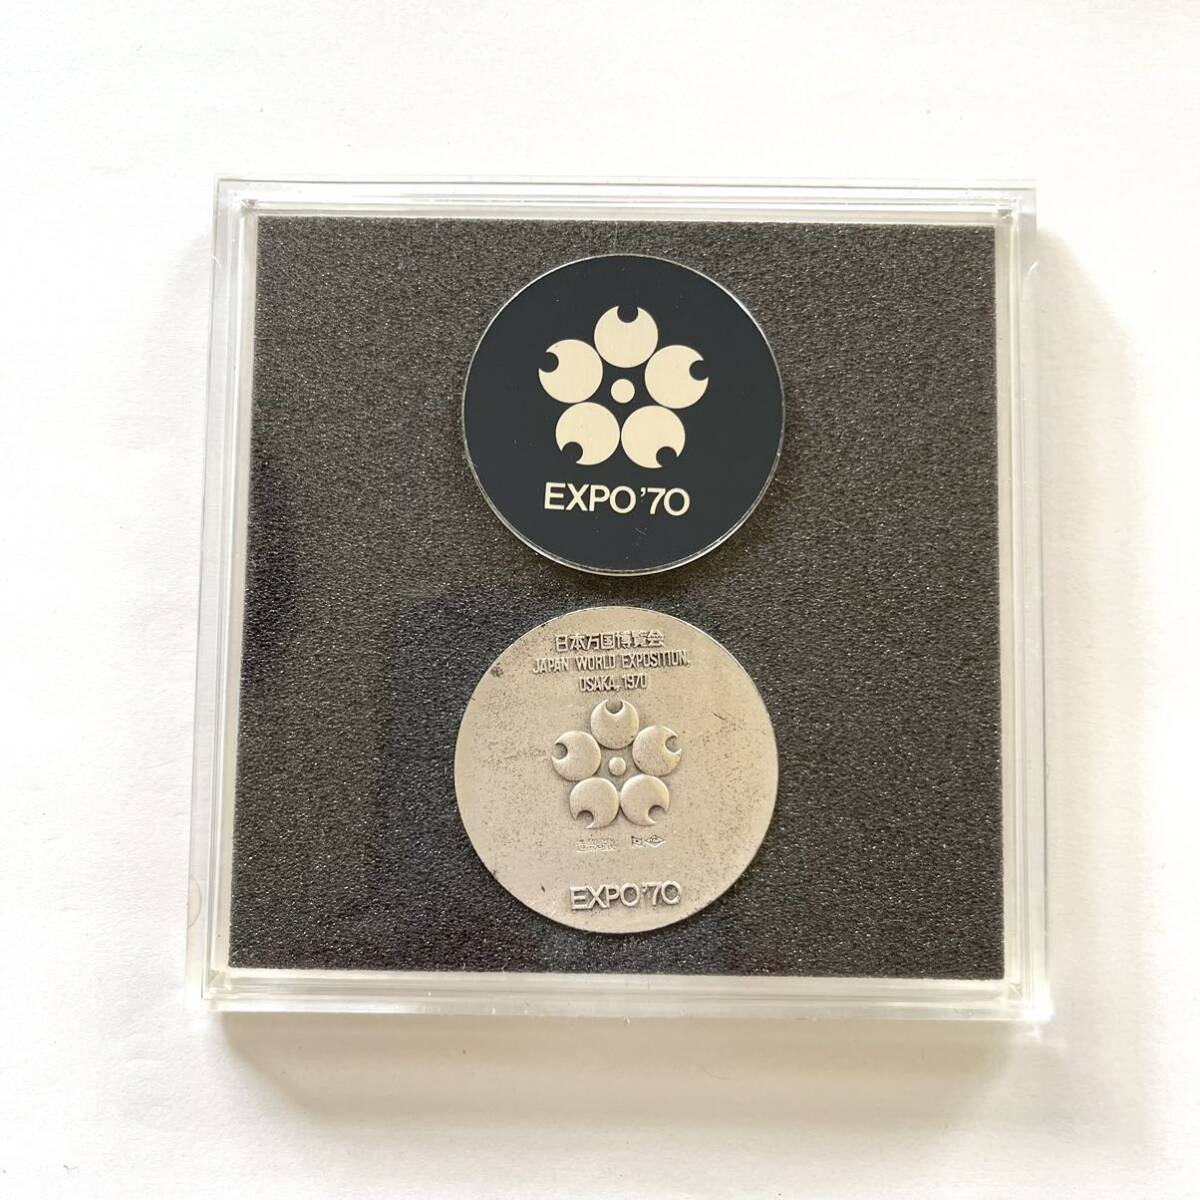 【銀 日本万国博覧会記念メダル 2個セット】MEDAL EXPO'70 SILVER MEDAL 925/1000 銀メダル 大蔵省造幣局製の画像3